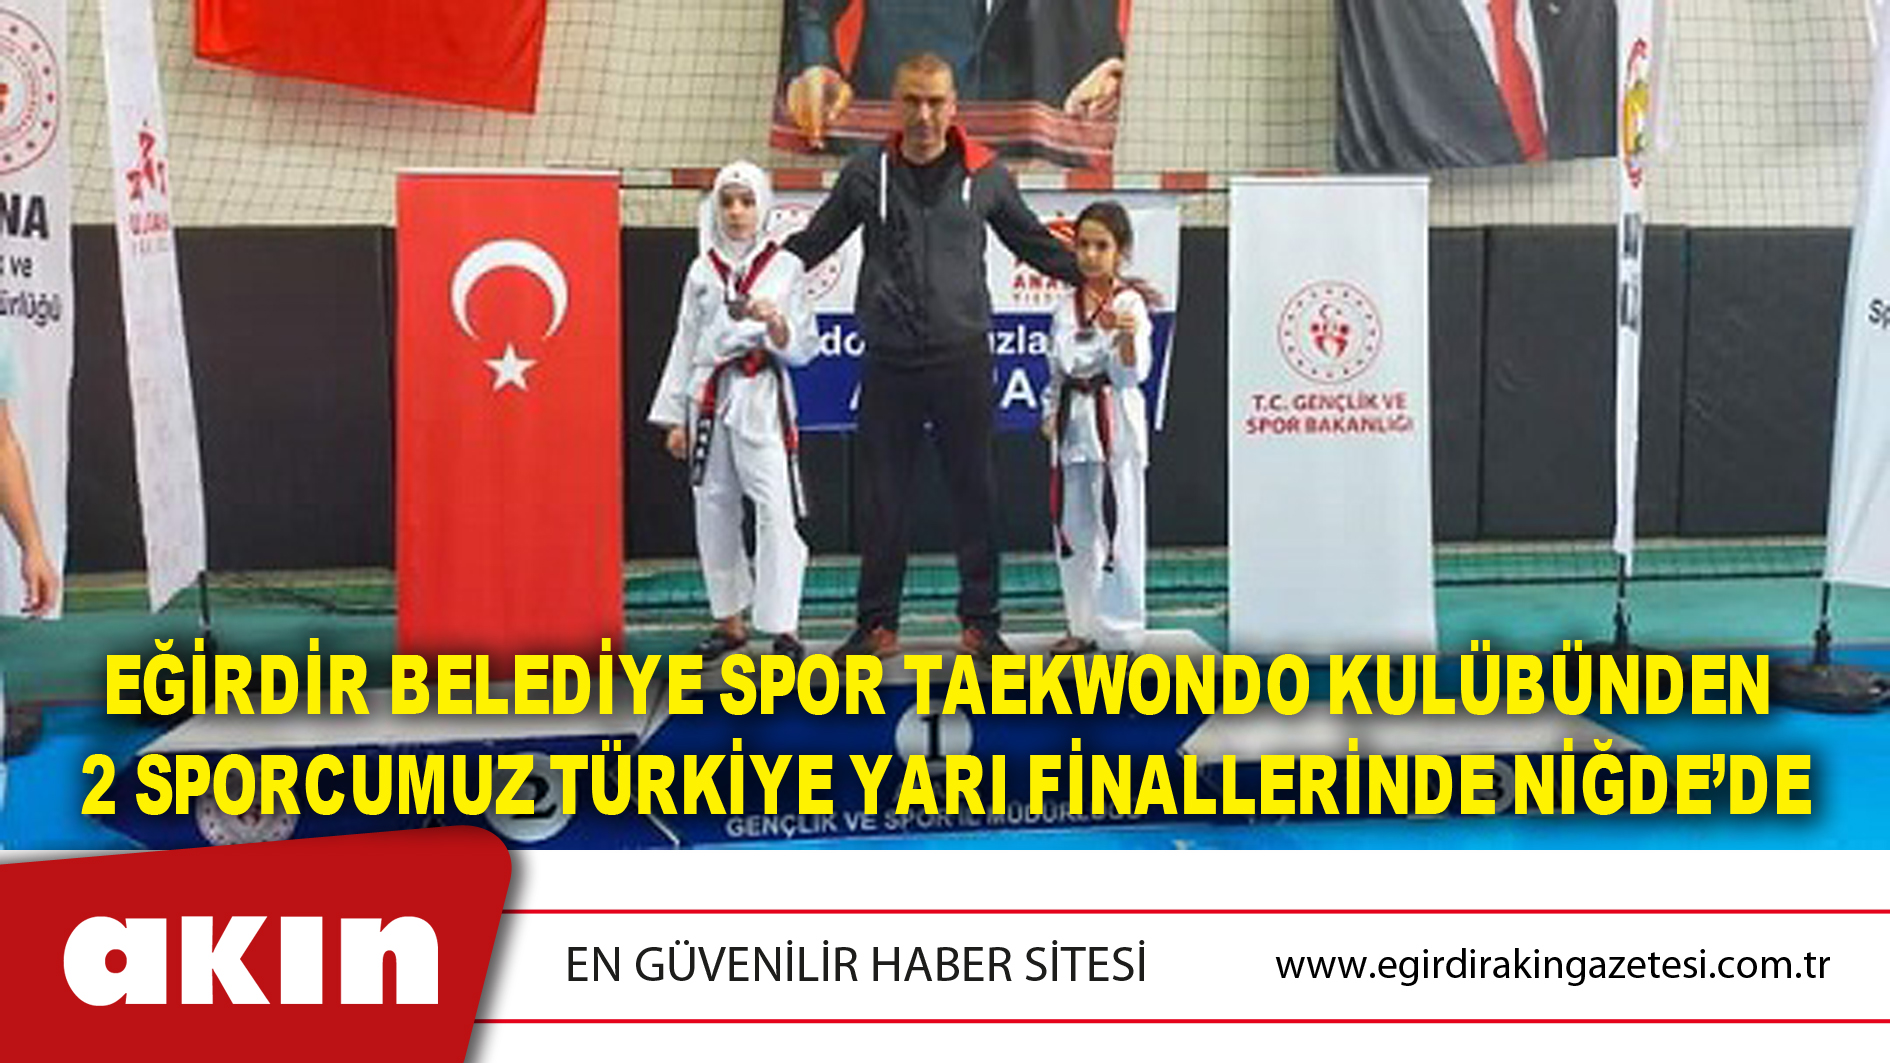 eğirdir haber,akın gazetesi,egirdir haberler,son dakika,Eğirdir Belediye Spor Taekwondo Kulübünden 2 Sporcumuz Türkiye Yarı Finallerinde Niğde’de